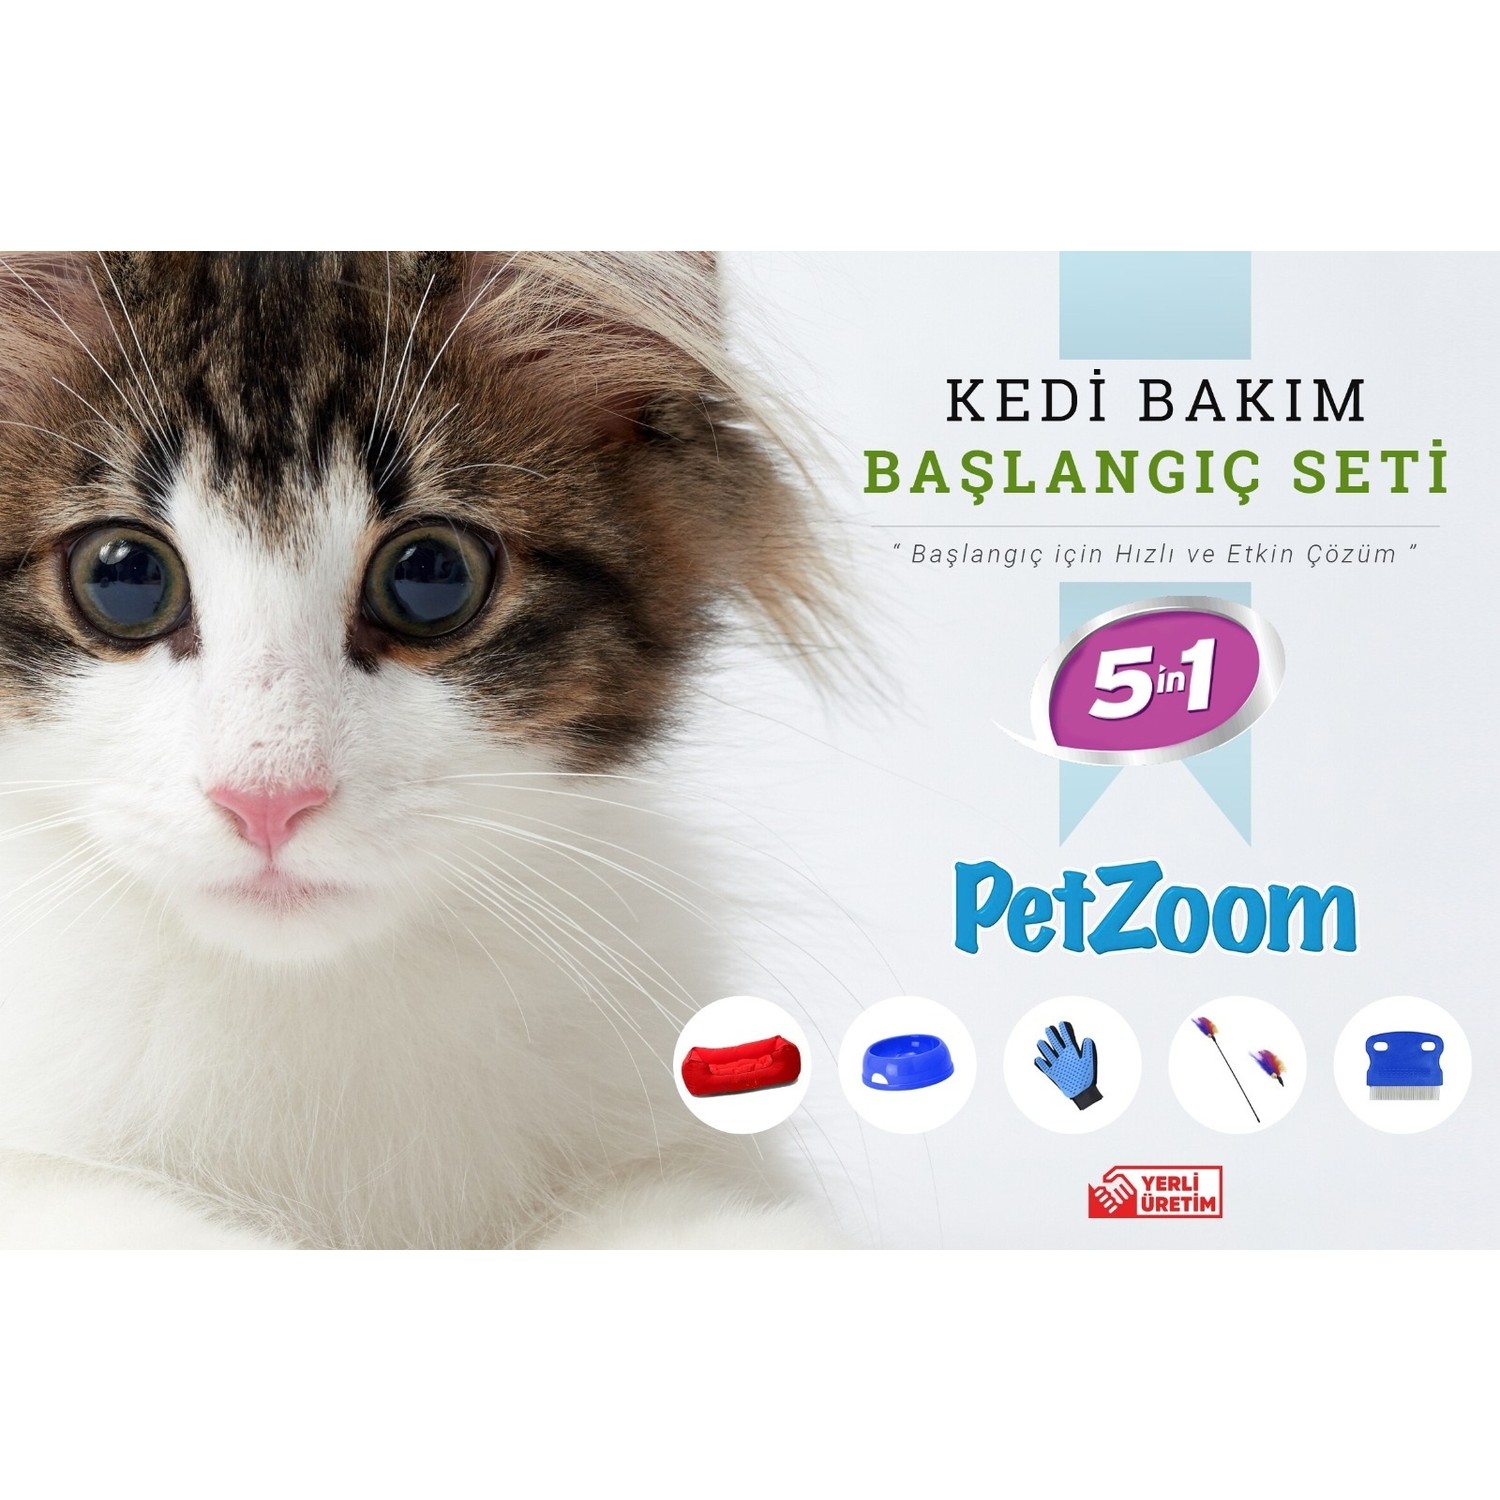 Petzoom Kedi Bakım ve Başlangıç Seti 5 Lİ Fiyatı